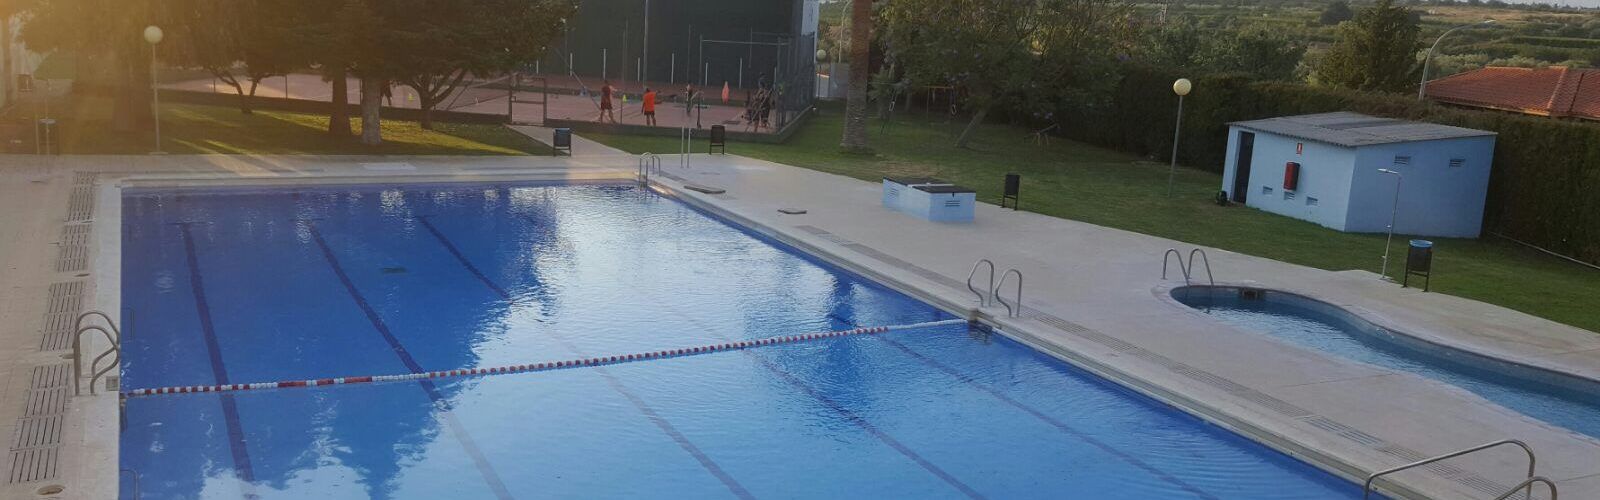 El ple de Càlig aprova la dotació de fons per a rehabilitar la piscina municipal